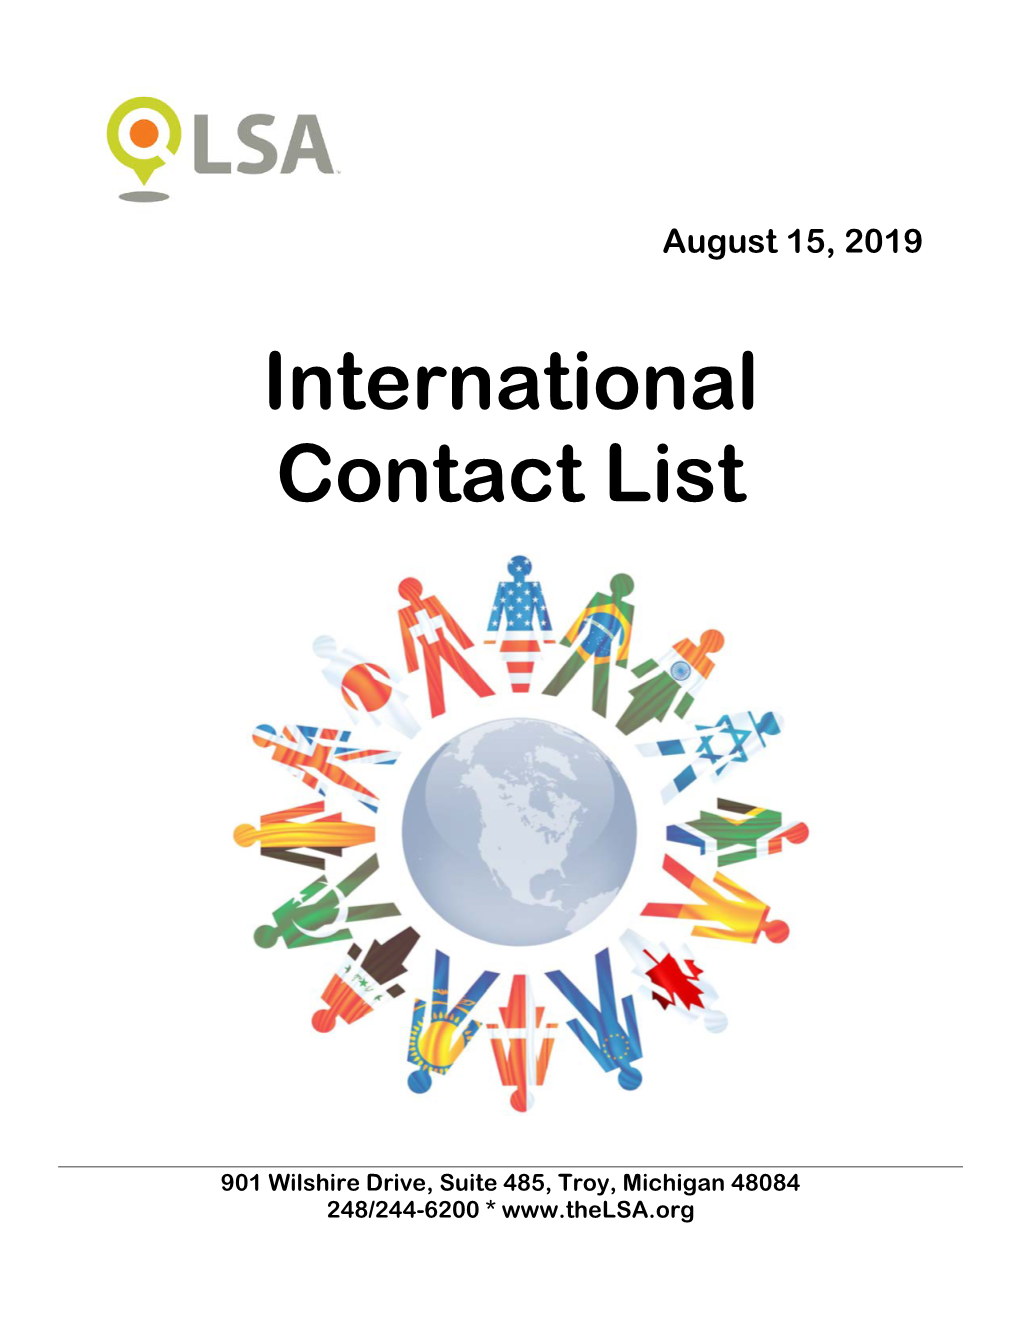 International Contact List